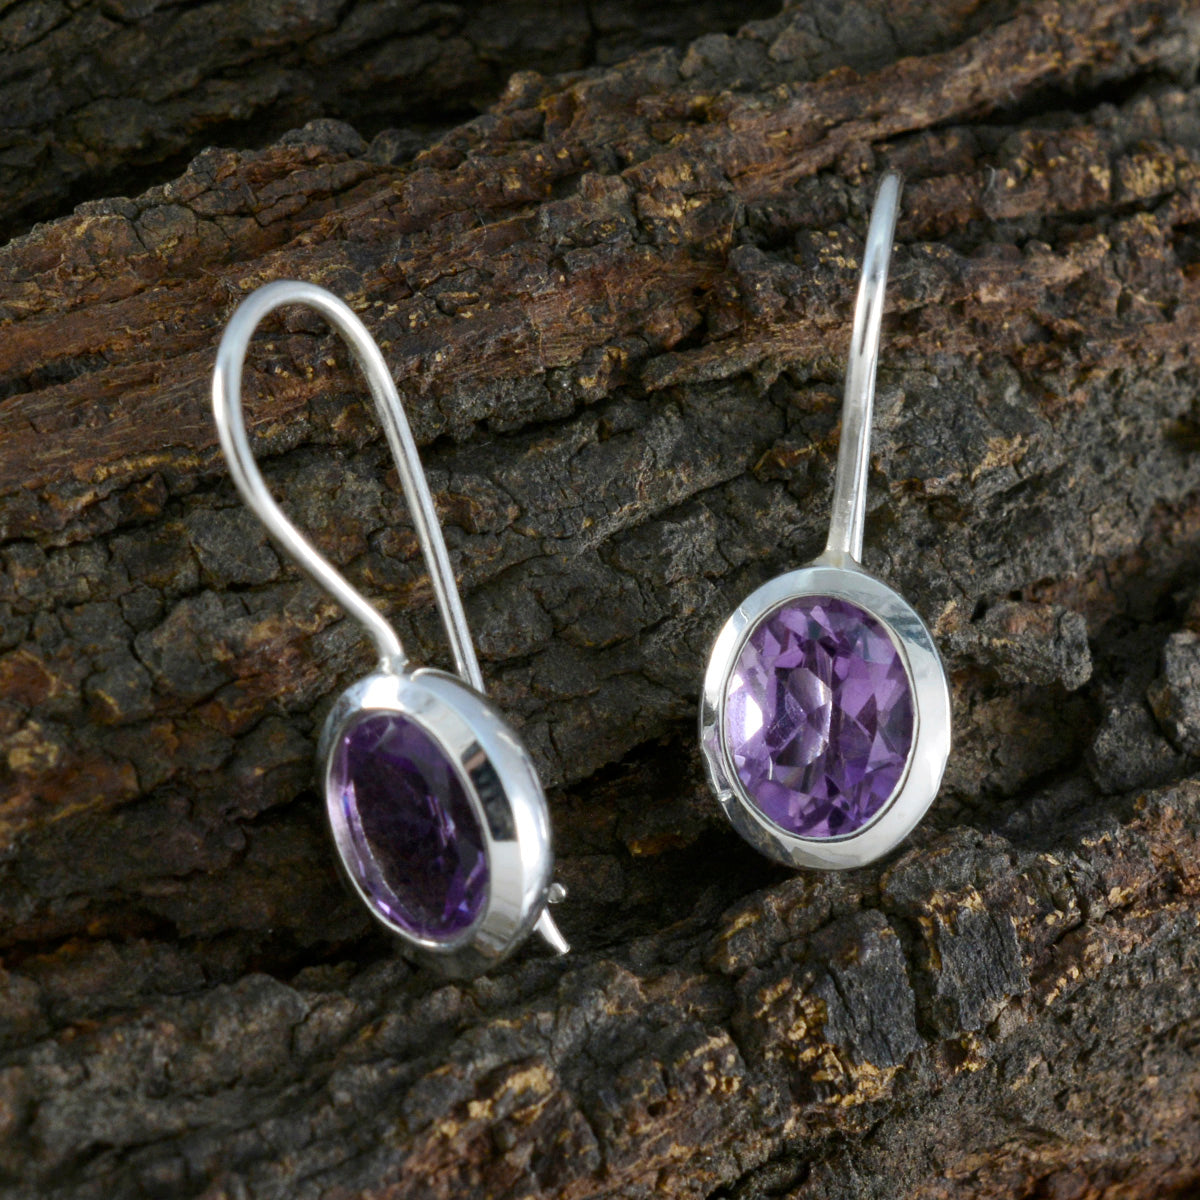 riyo fantasioso orecchino in argento sterling 925 per le donne orecchino di ametista con castone orecchino viola orecchino pendente